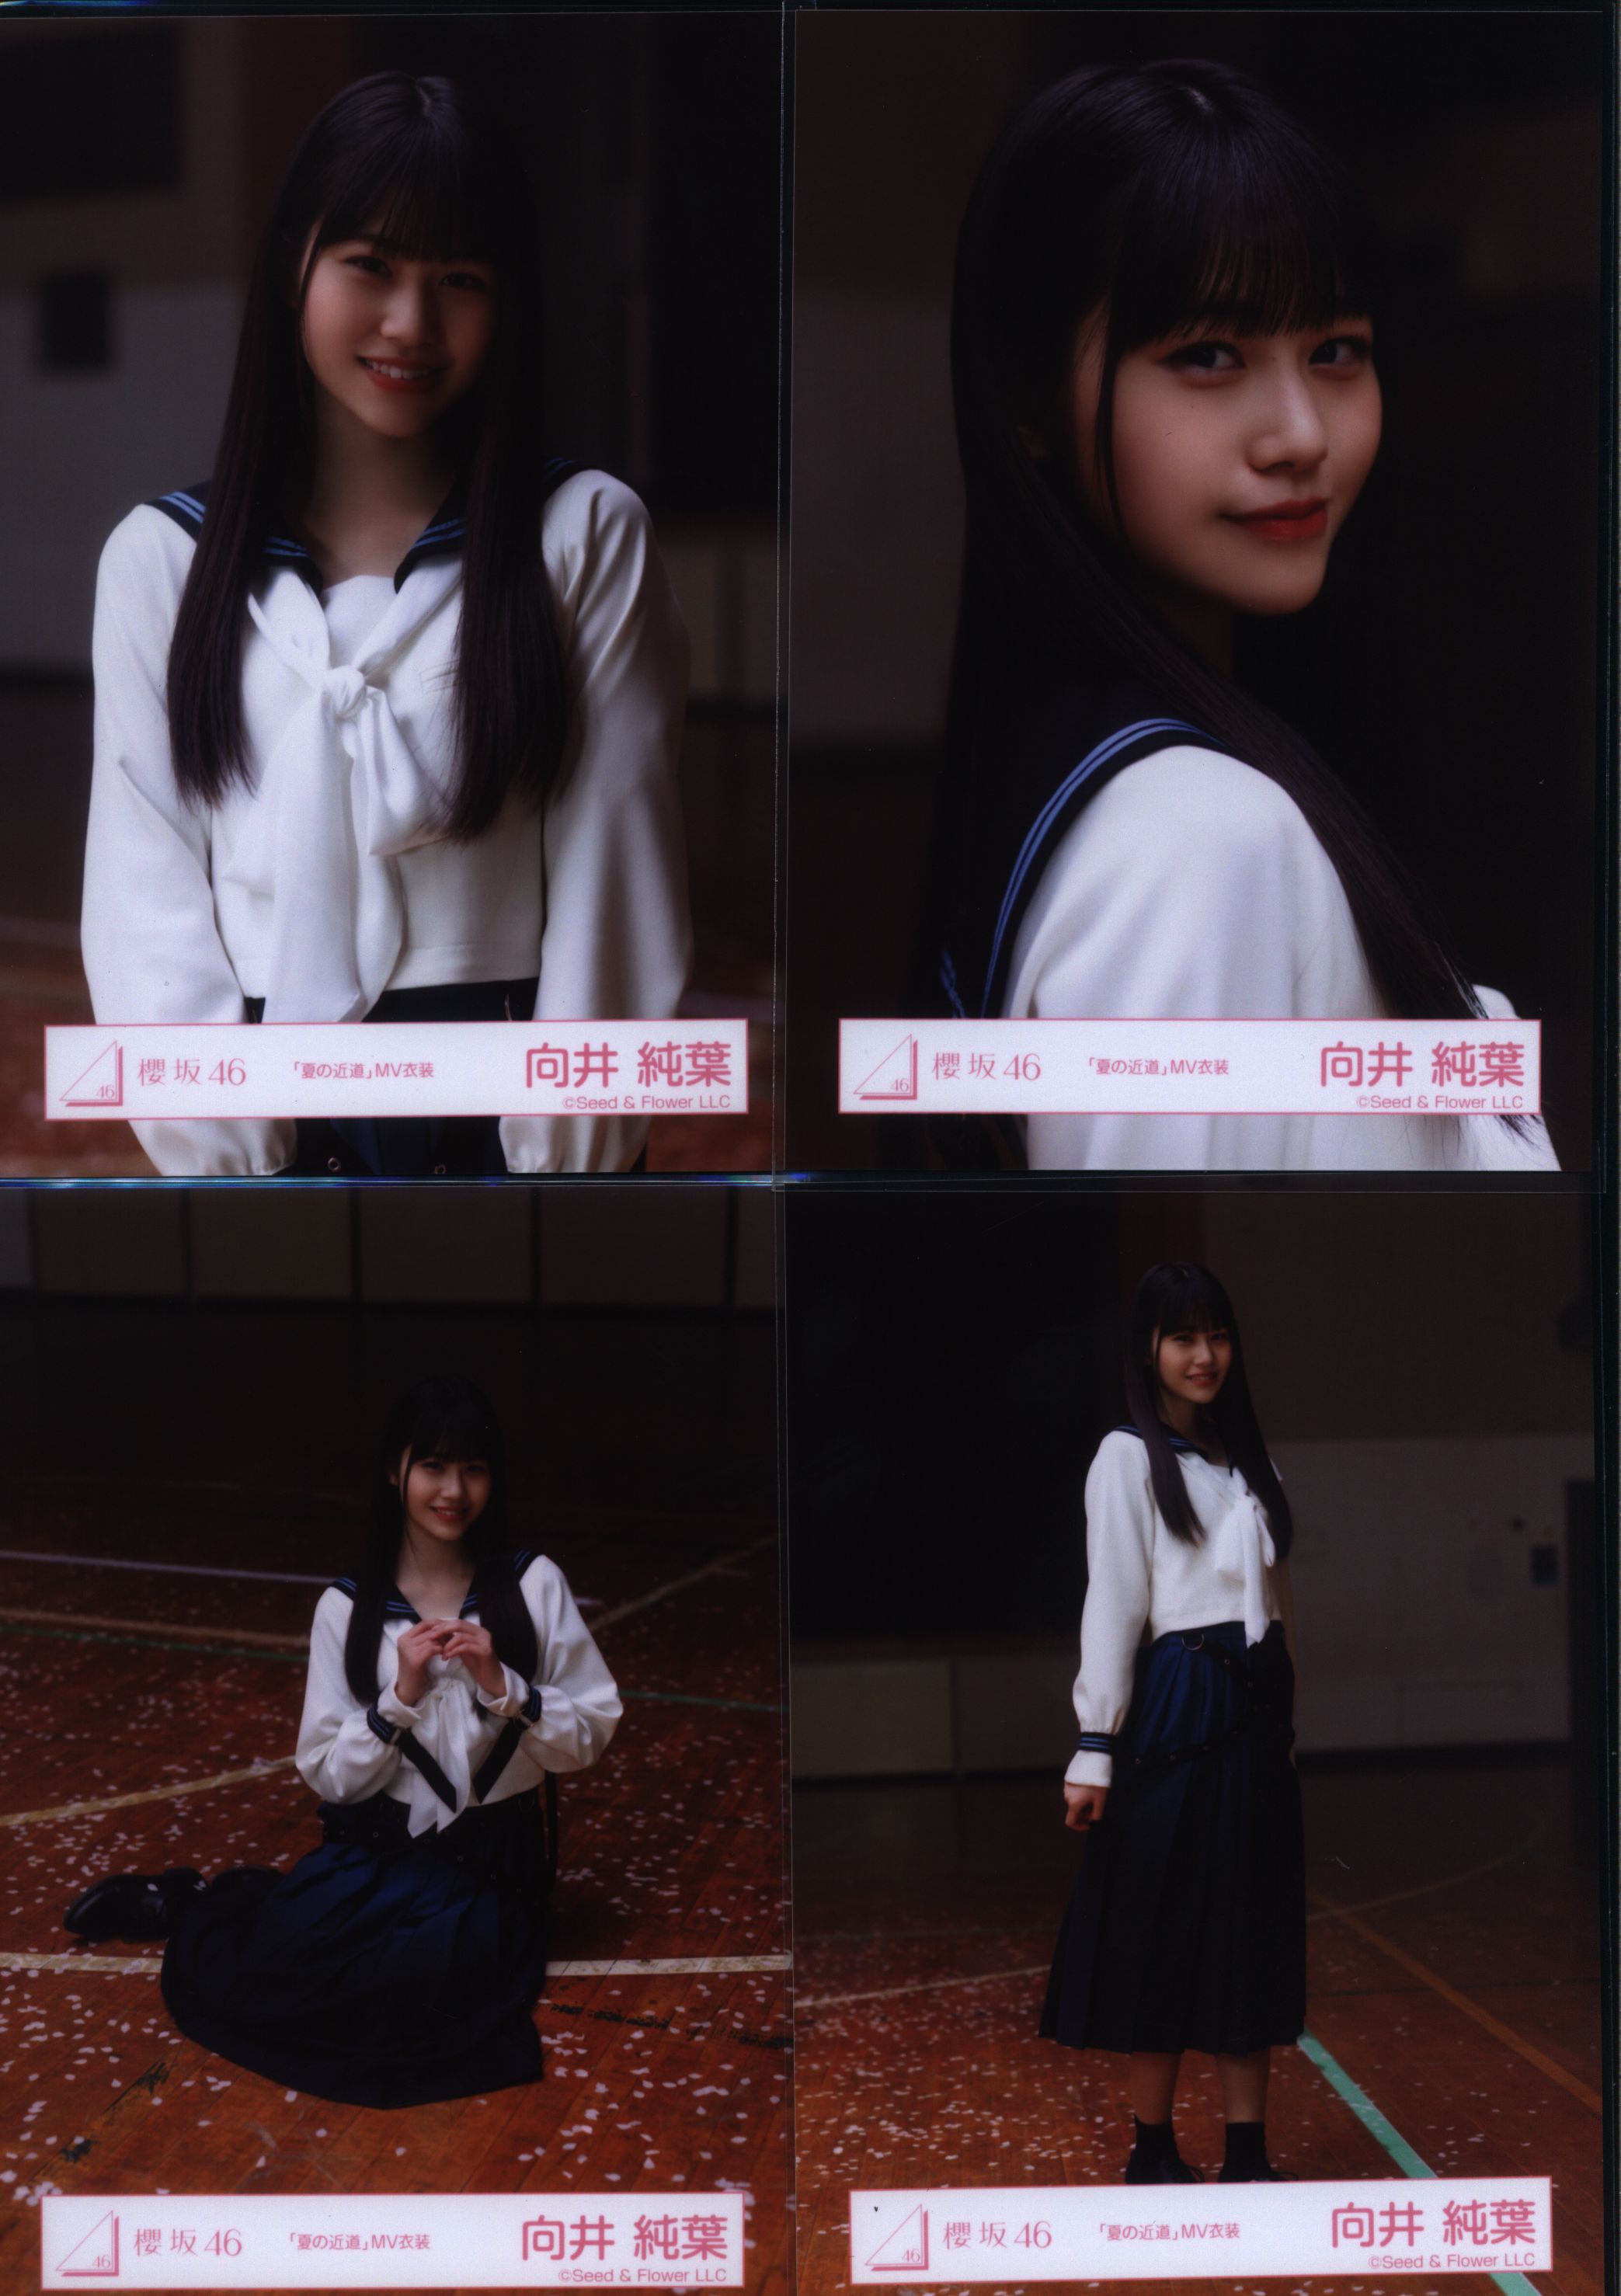 櫻坂46 生写真 夏の近道 MV衣装 3期生 全メンバーフルコンプ 11名44枚 